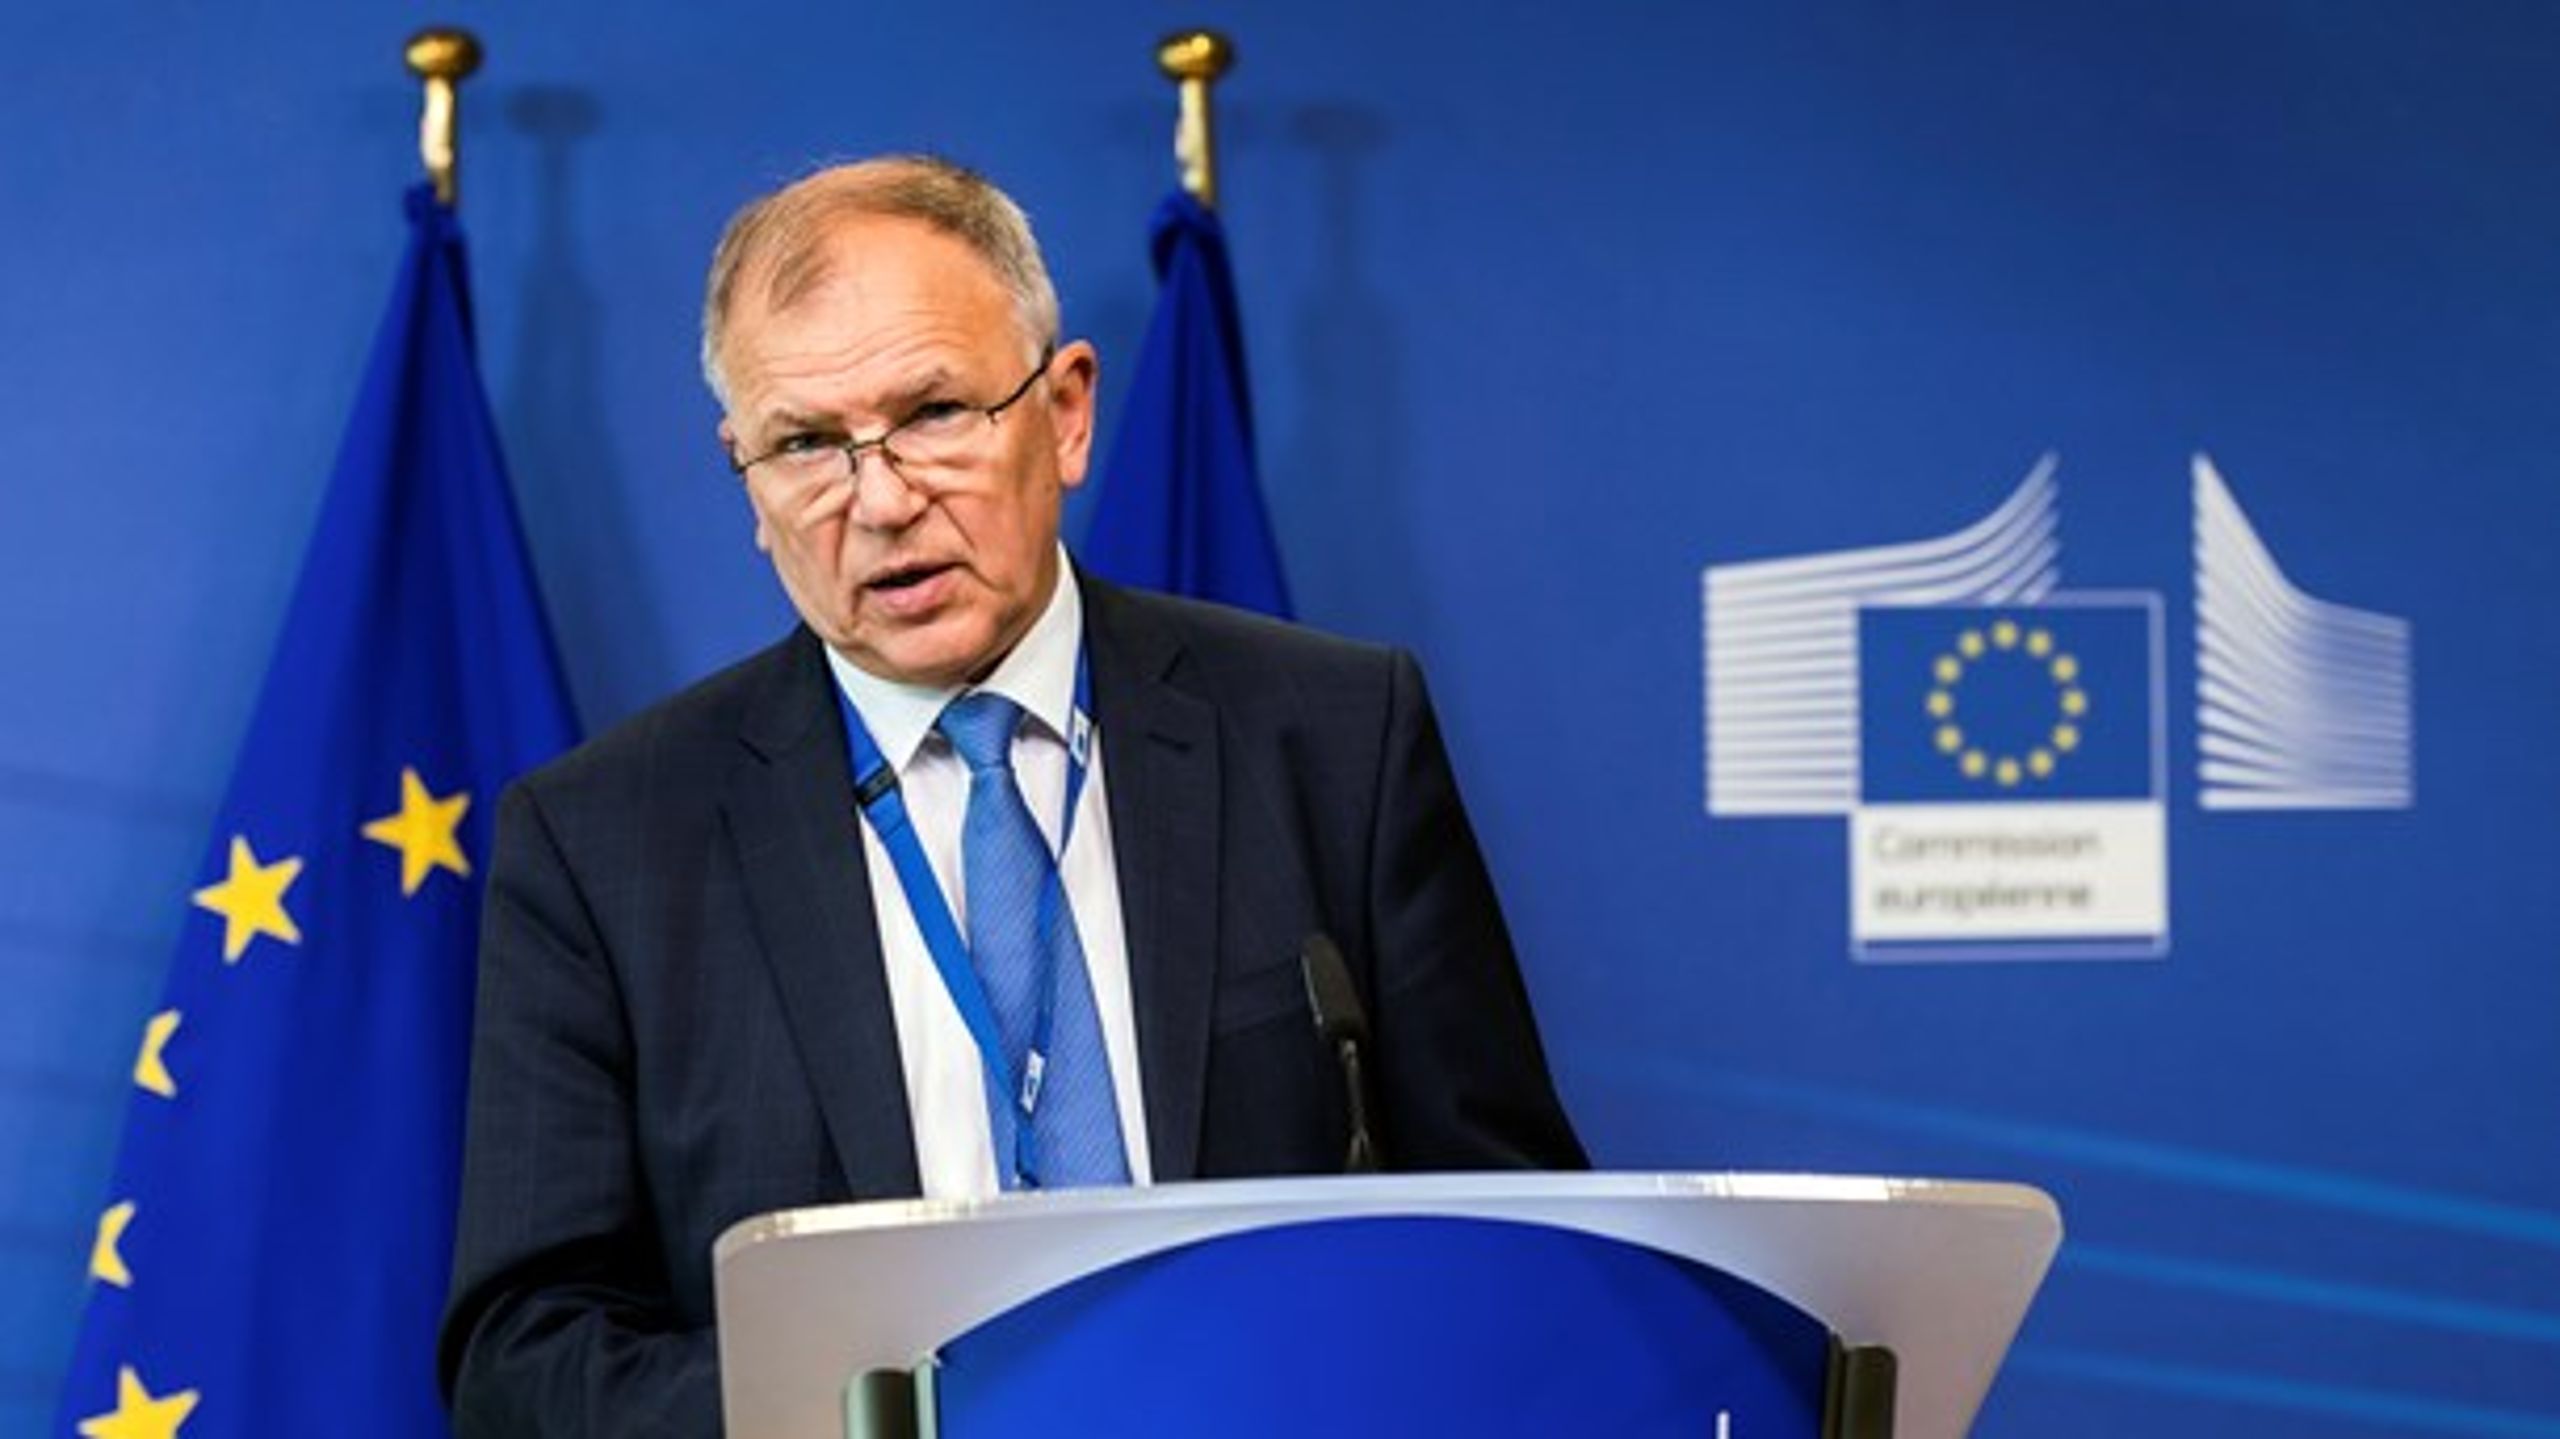 Vytenis Andriukaitis, der er EU-kommissær for sundhed og fødevaresikkerhed, anser de europæiske referencenetværk for at være en succeshistorie på EU-plan.